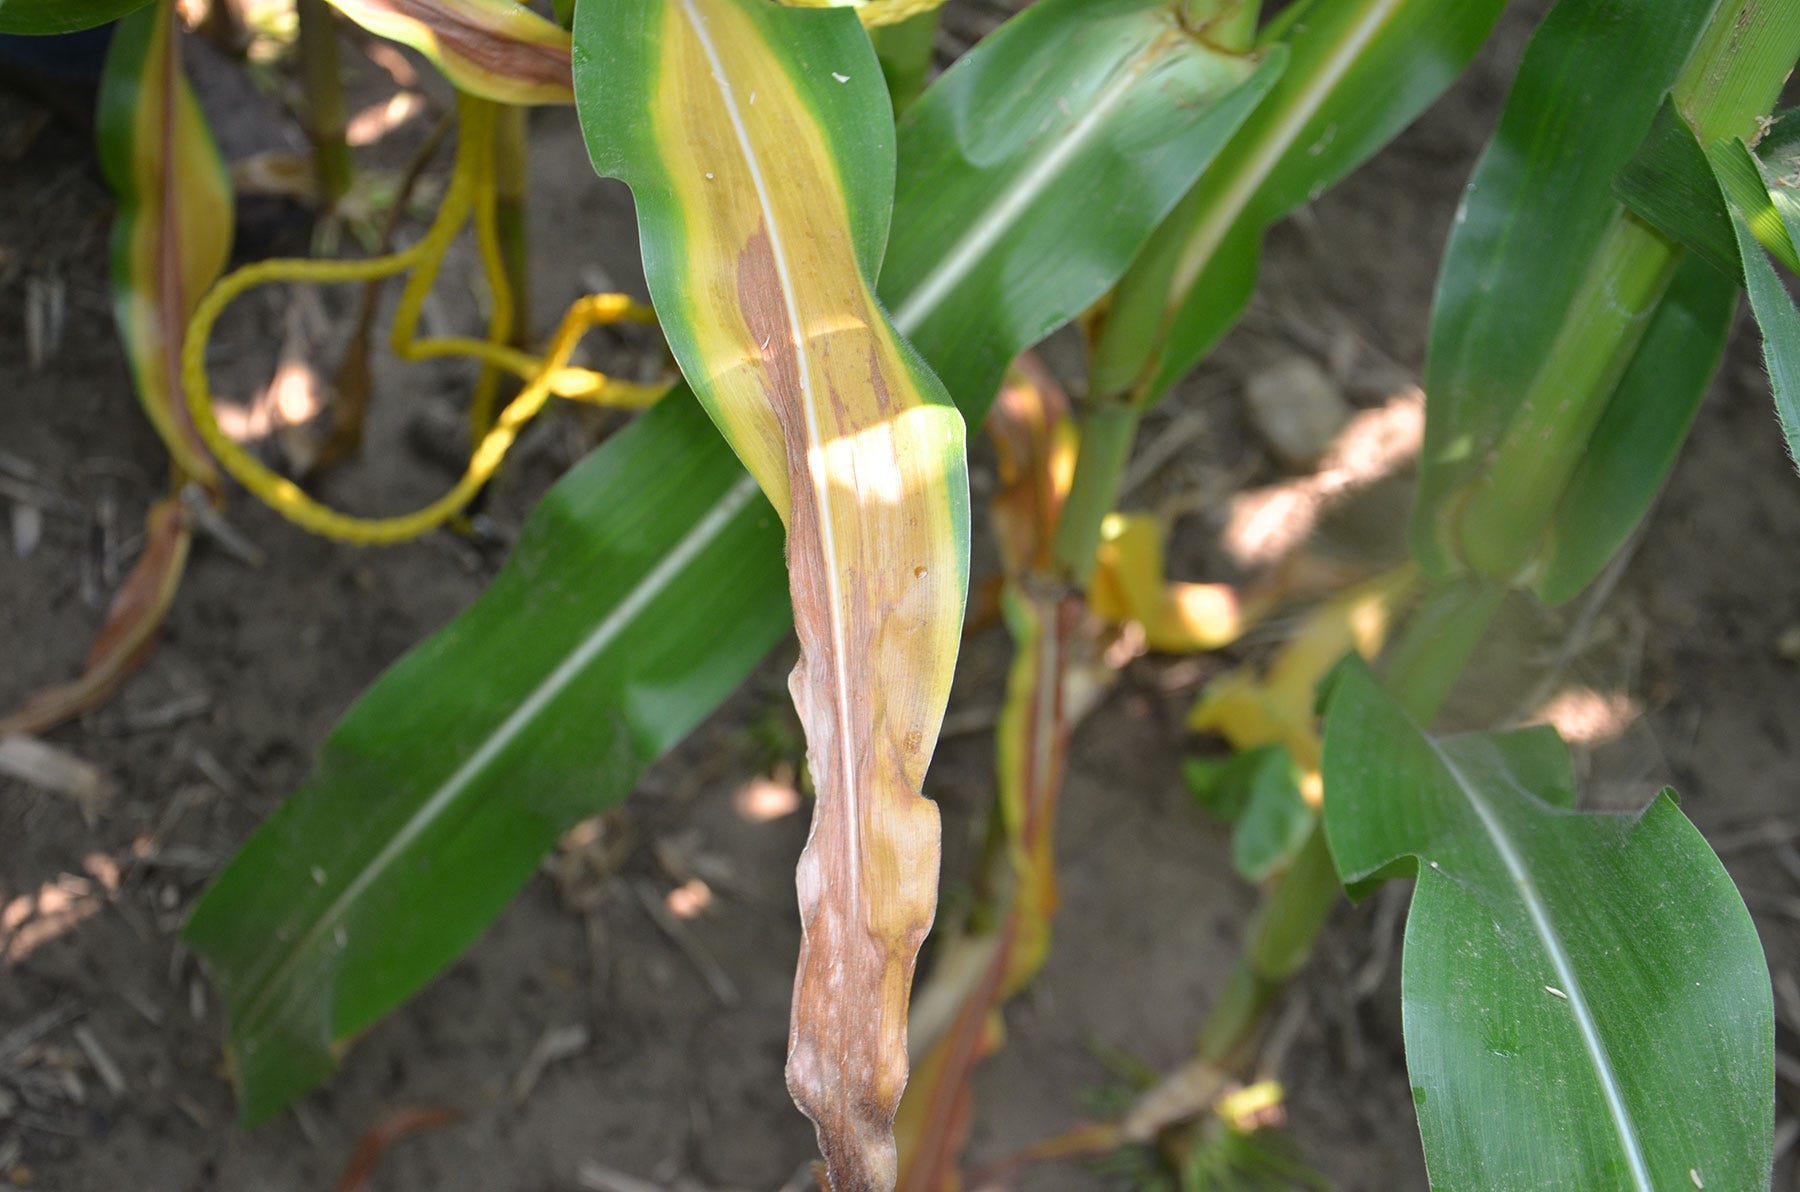 corn leaf showing leaf firing symptom